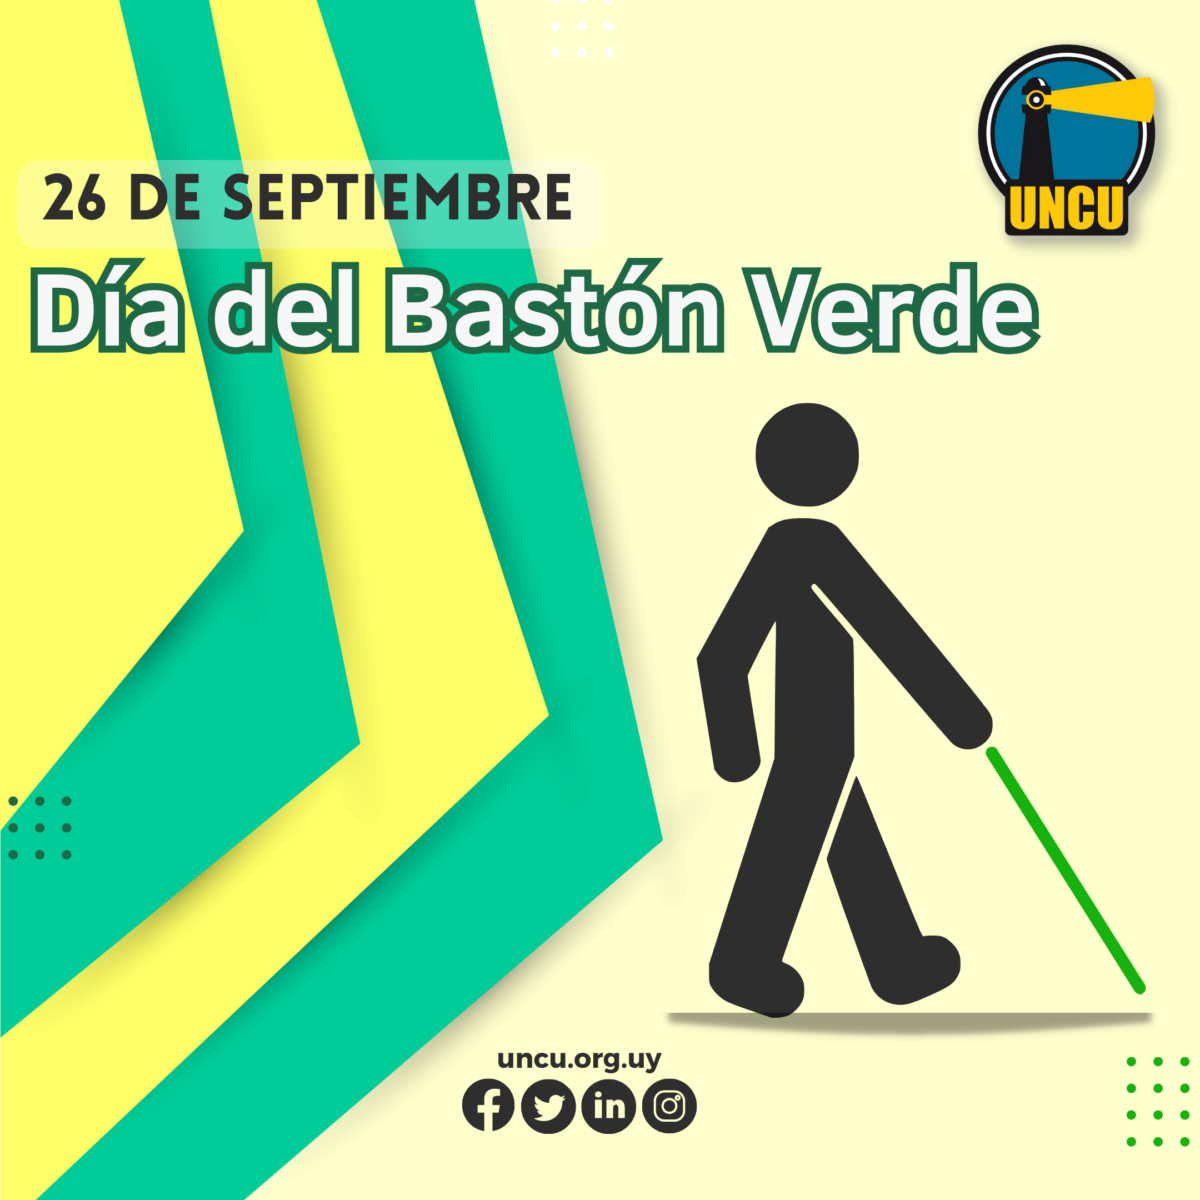 26 de septiembre. Día del Bastón Verde. Una silueta humana utilizando un bastón verde. Logo, web y redes sociales de UNCU.